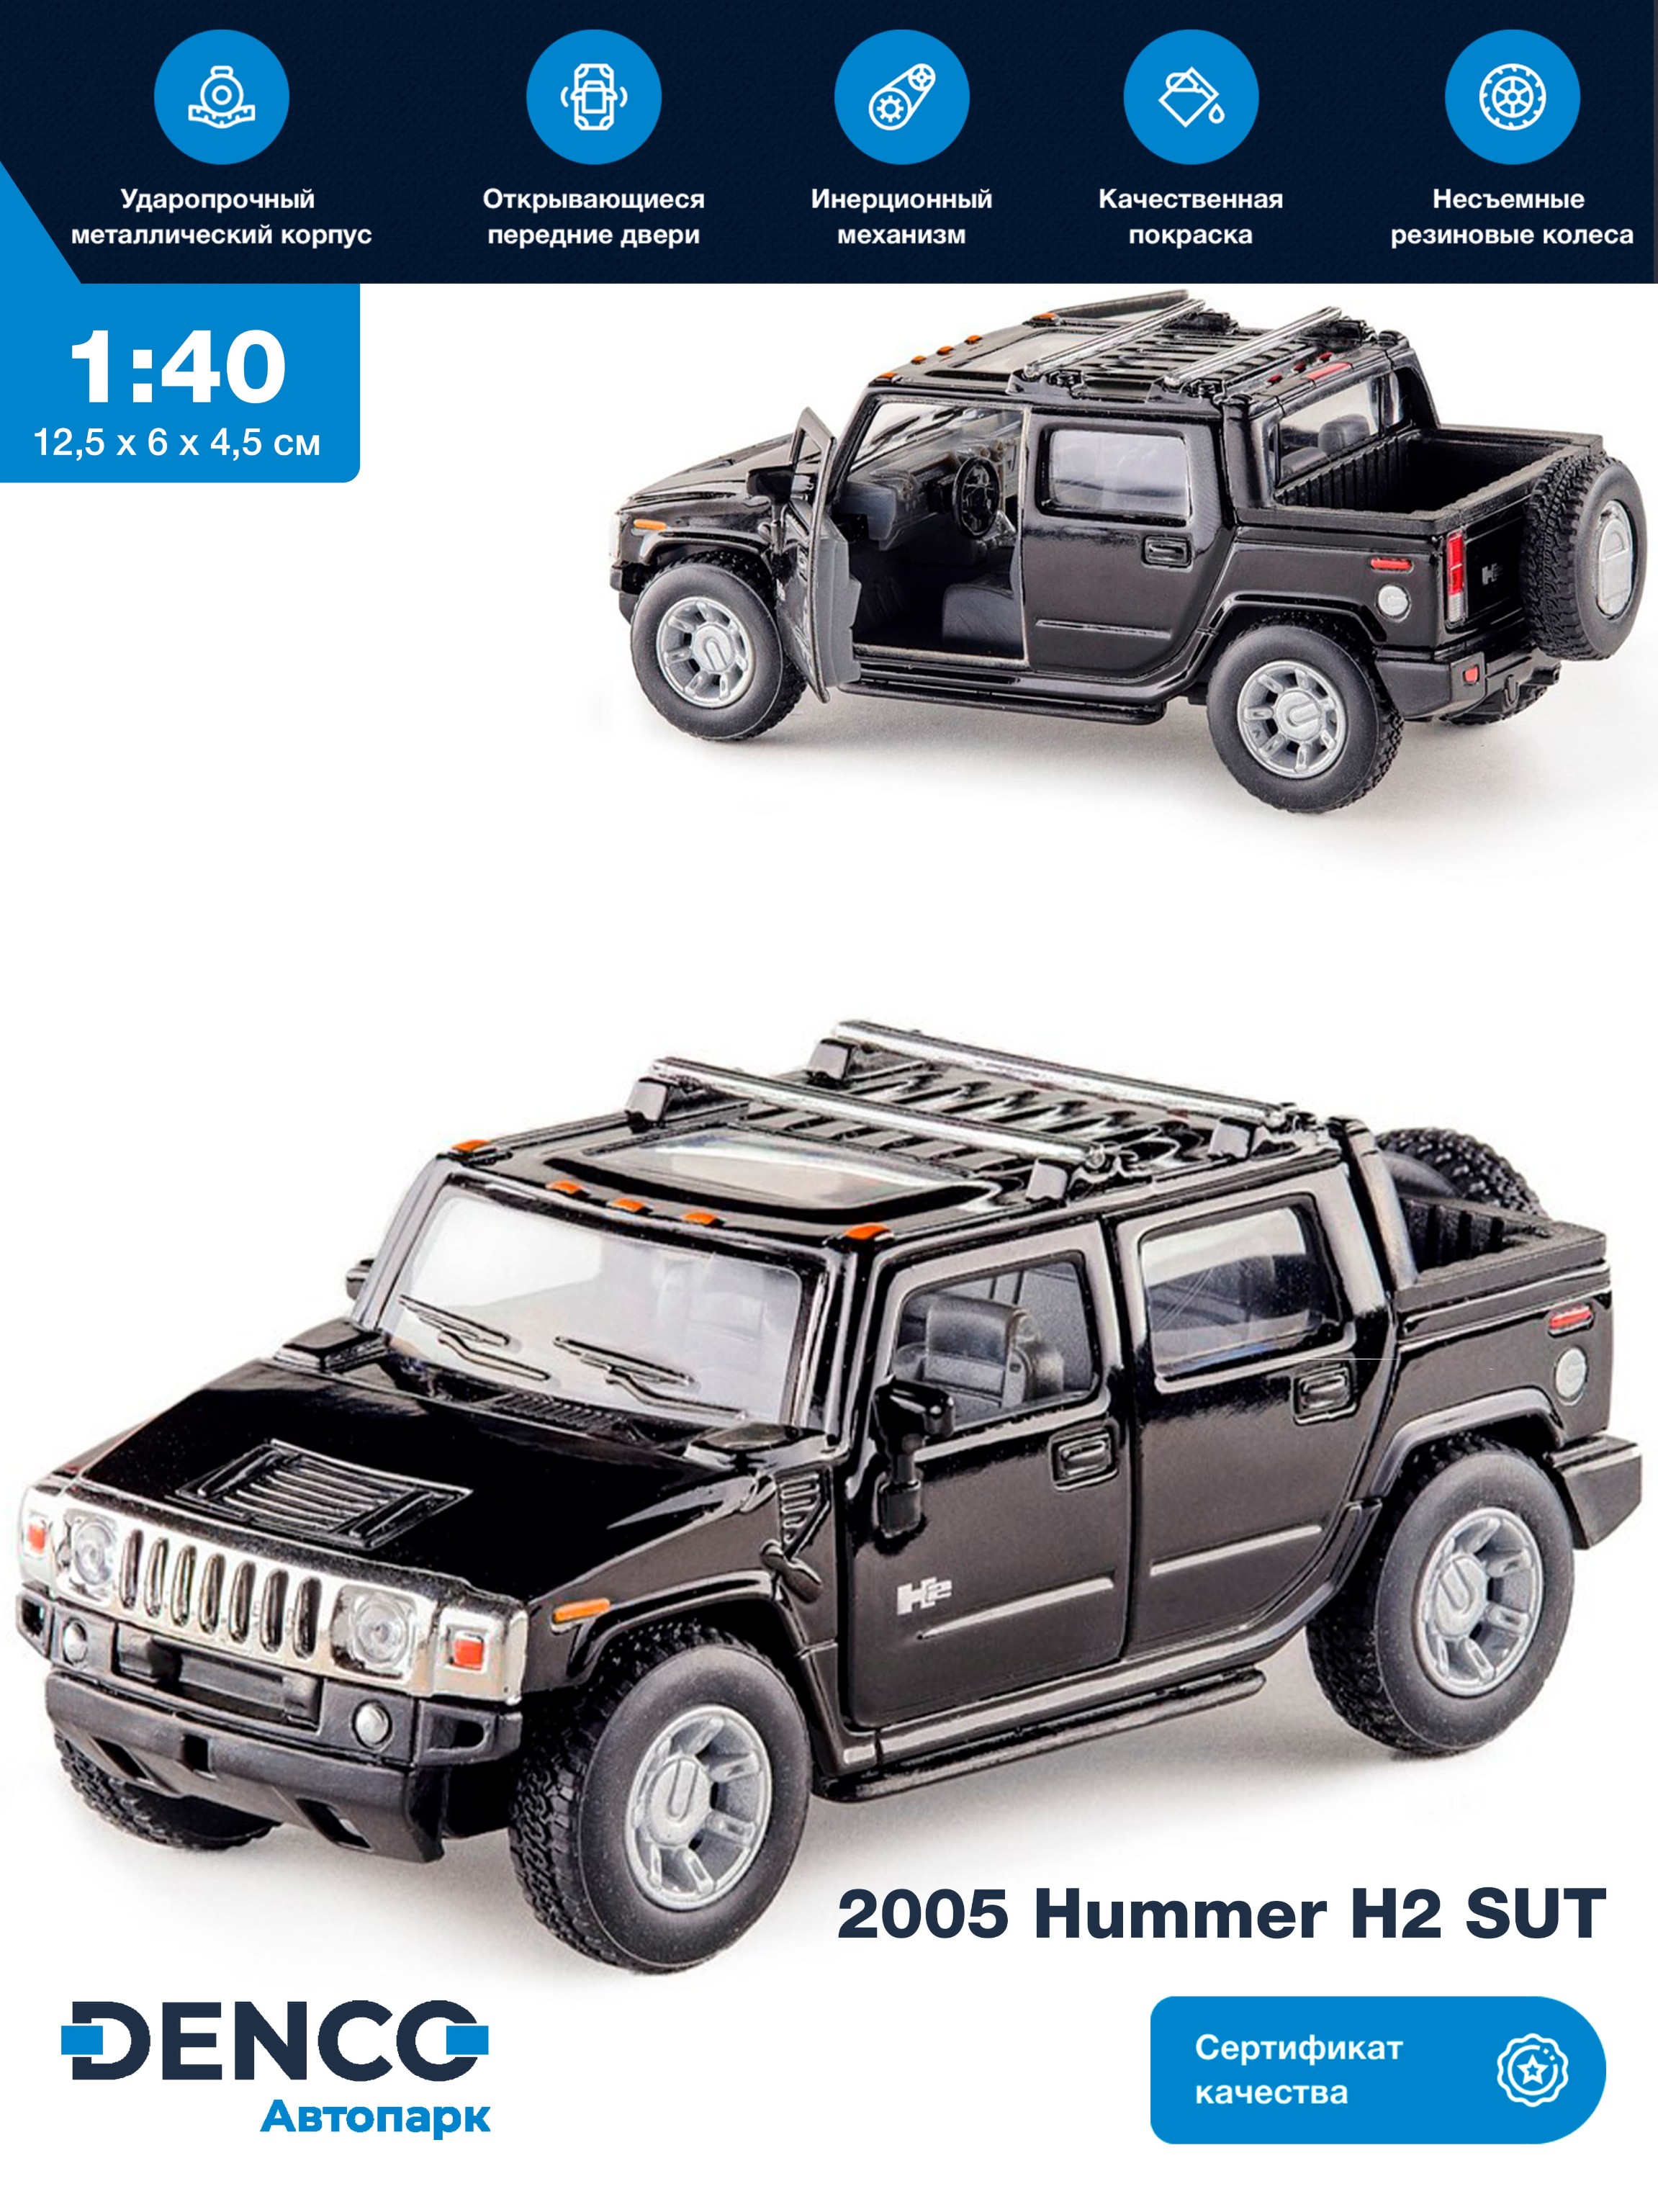 Металлическая машинка Kinsmart 1:40 «2005 Hummer H2 SUT» KT5097W инерционная в инд. коробке / Черный